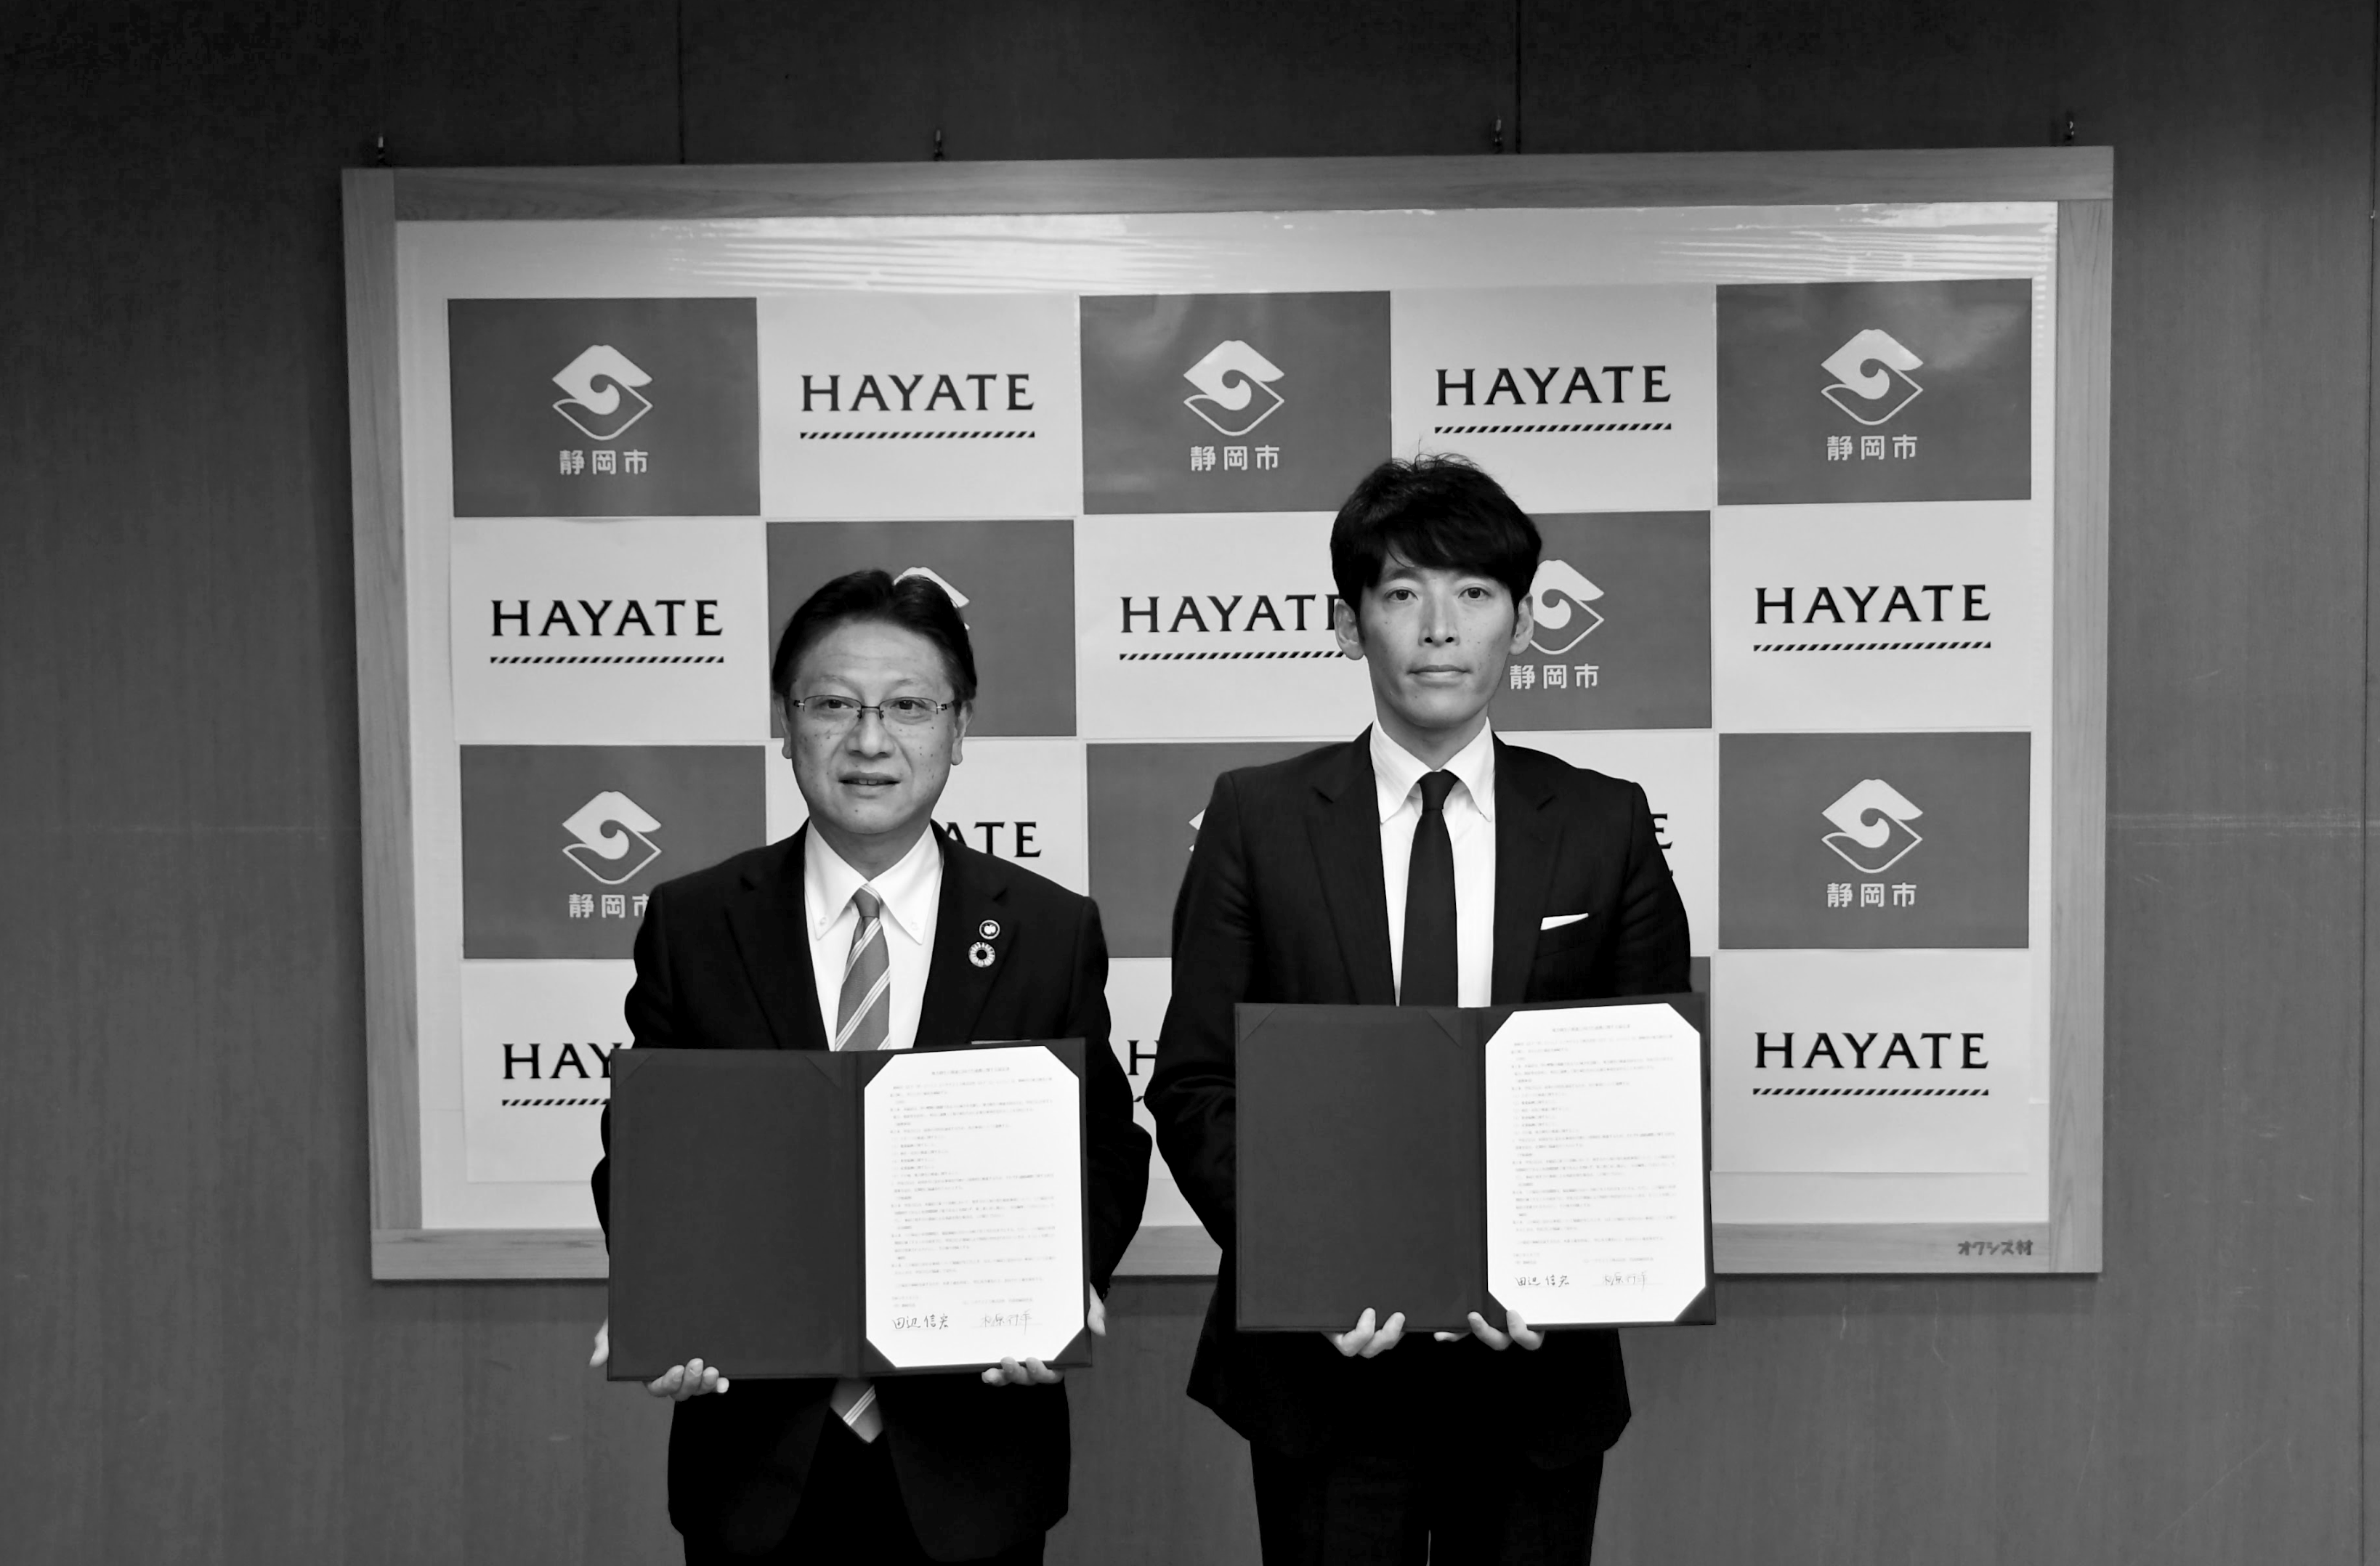 ハヤテ223株式会社 静岡市 包括連携協定